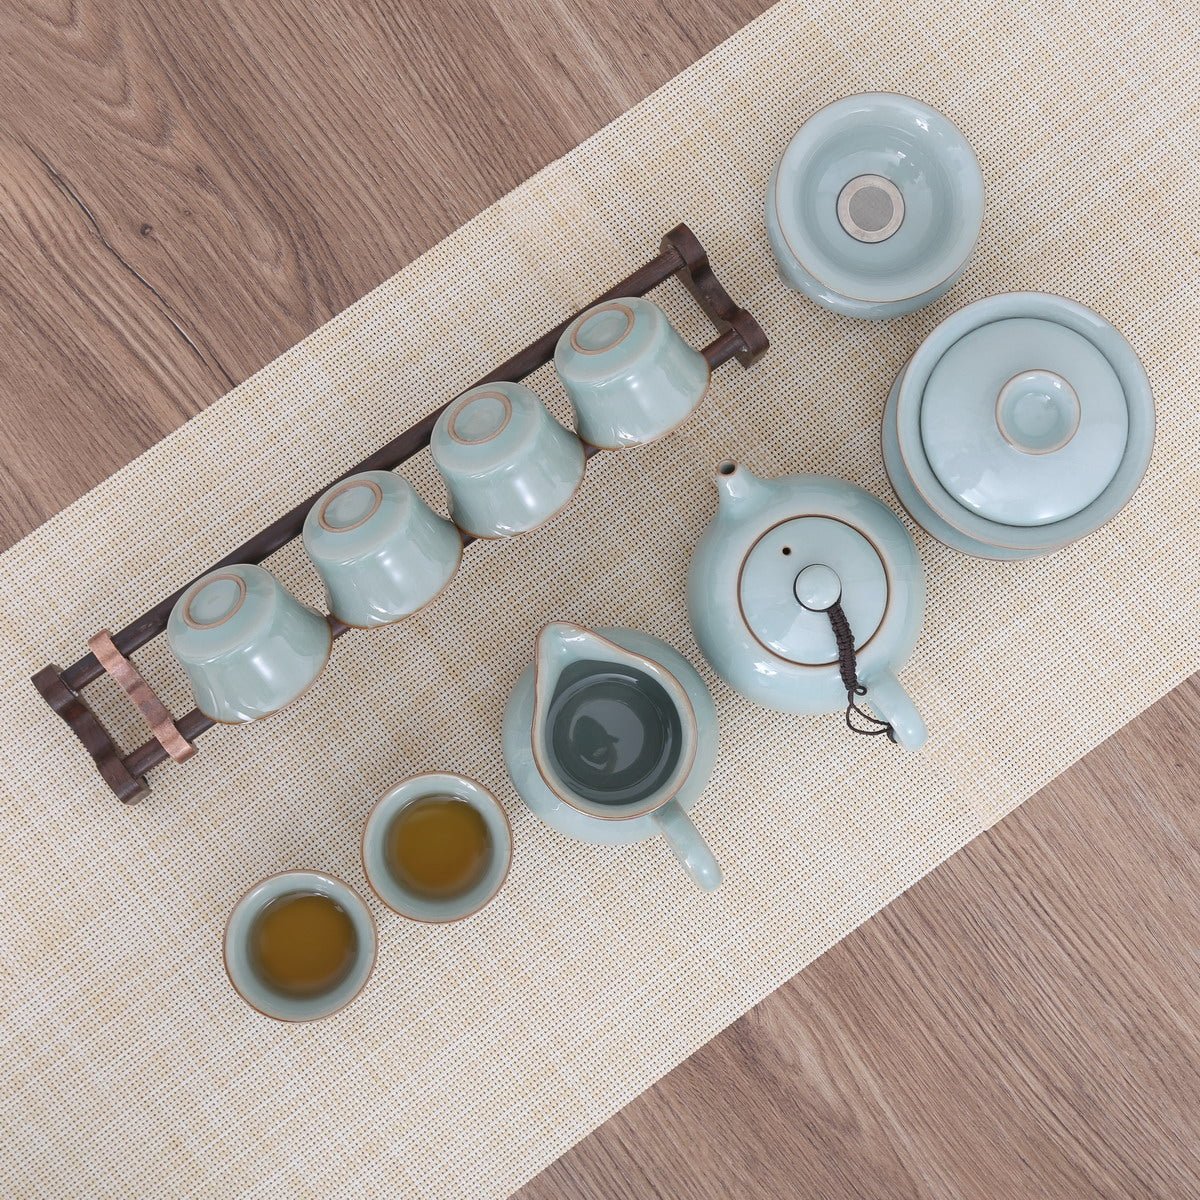 Longquan Celadon Ge Ware Gift Tea Set - Taishan Tea Club